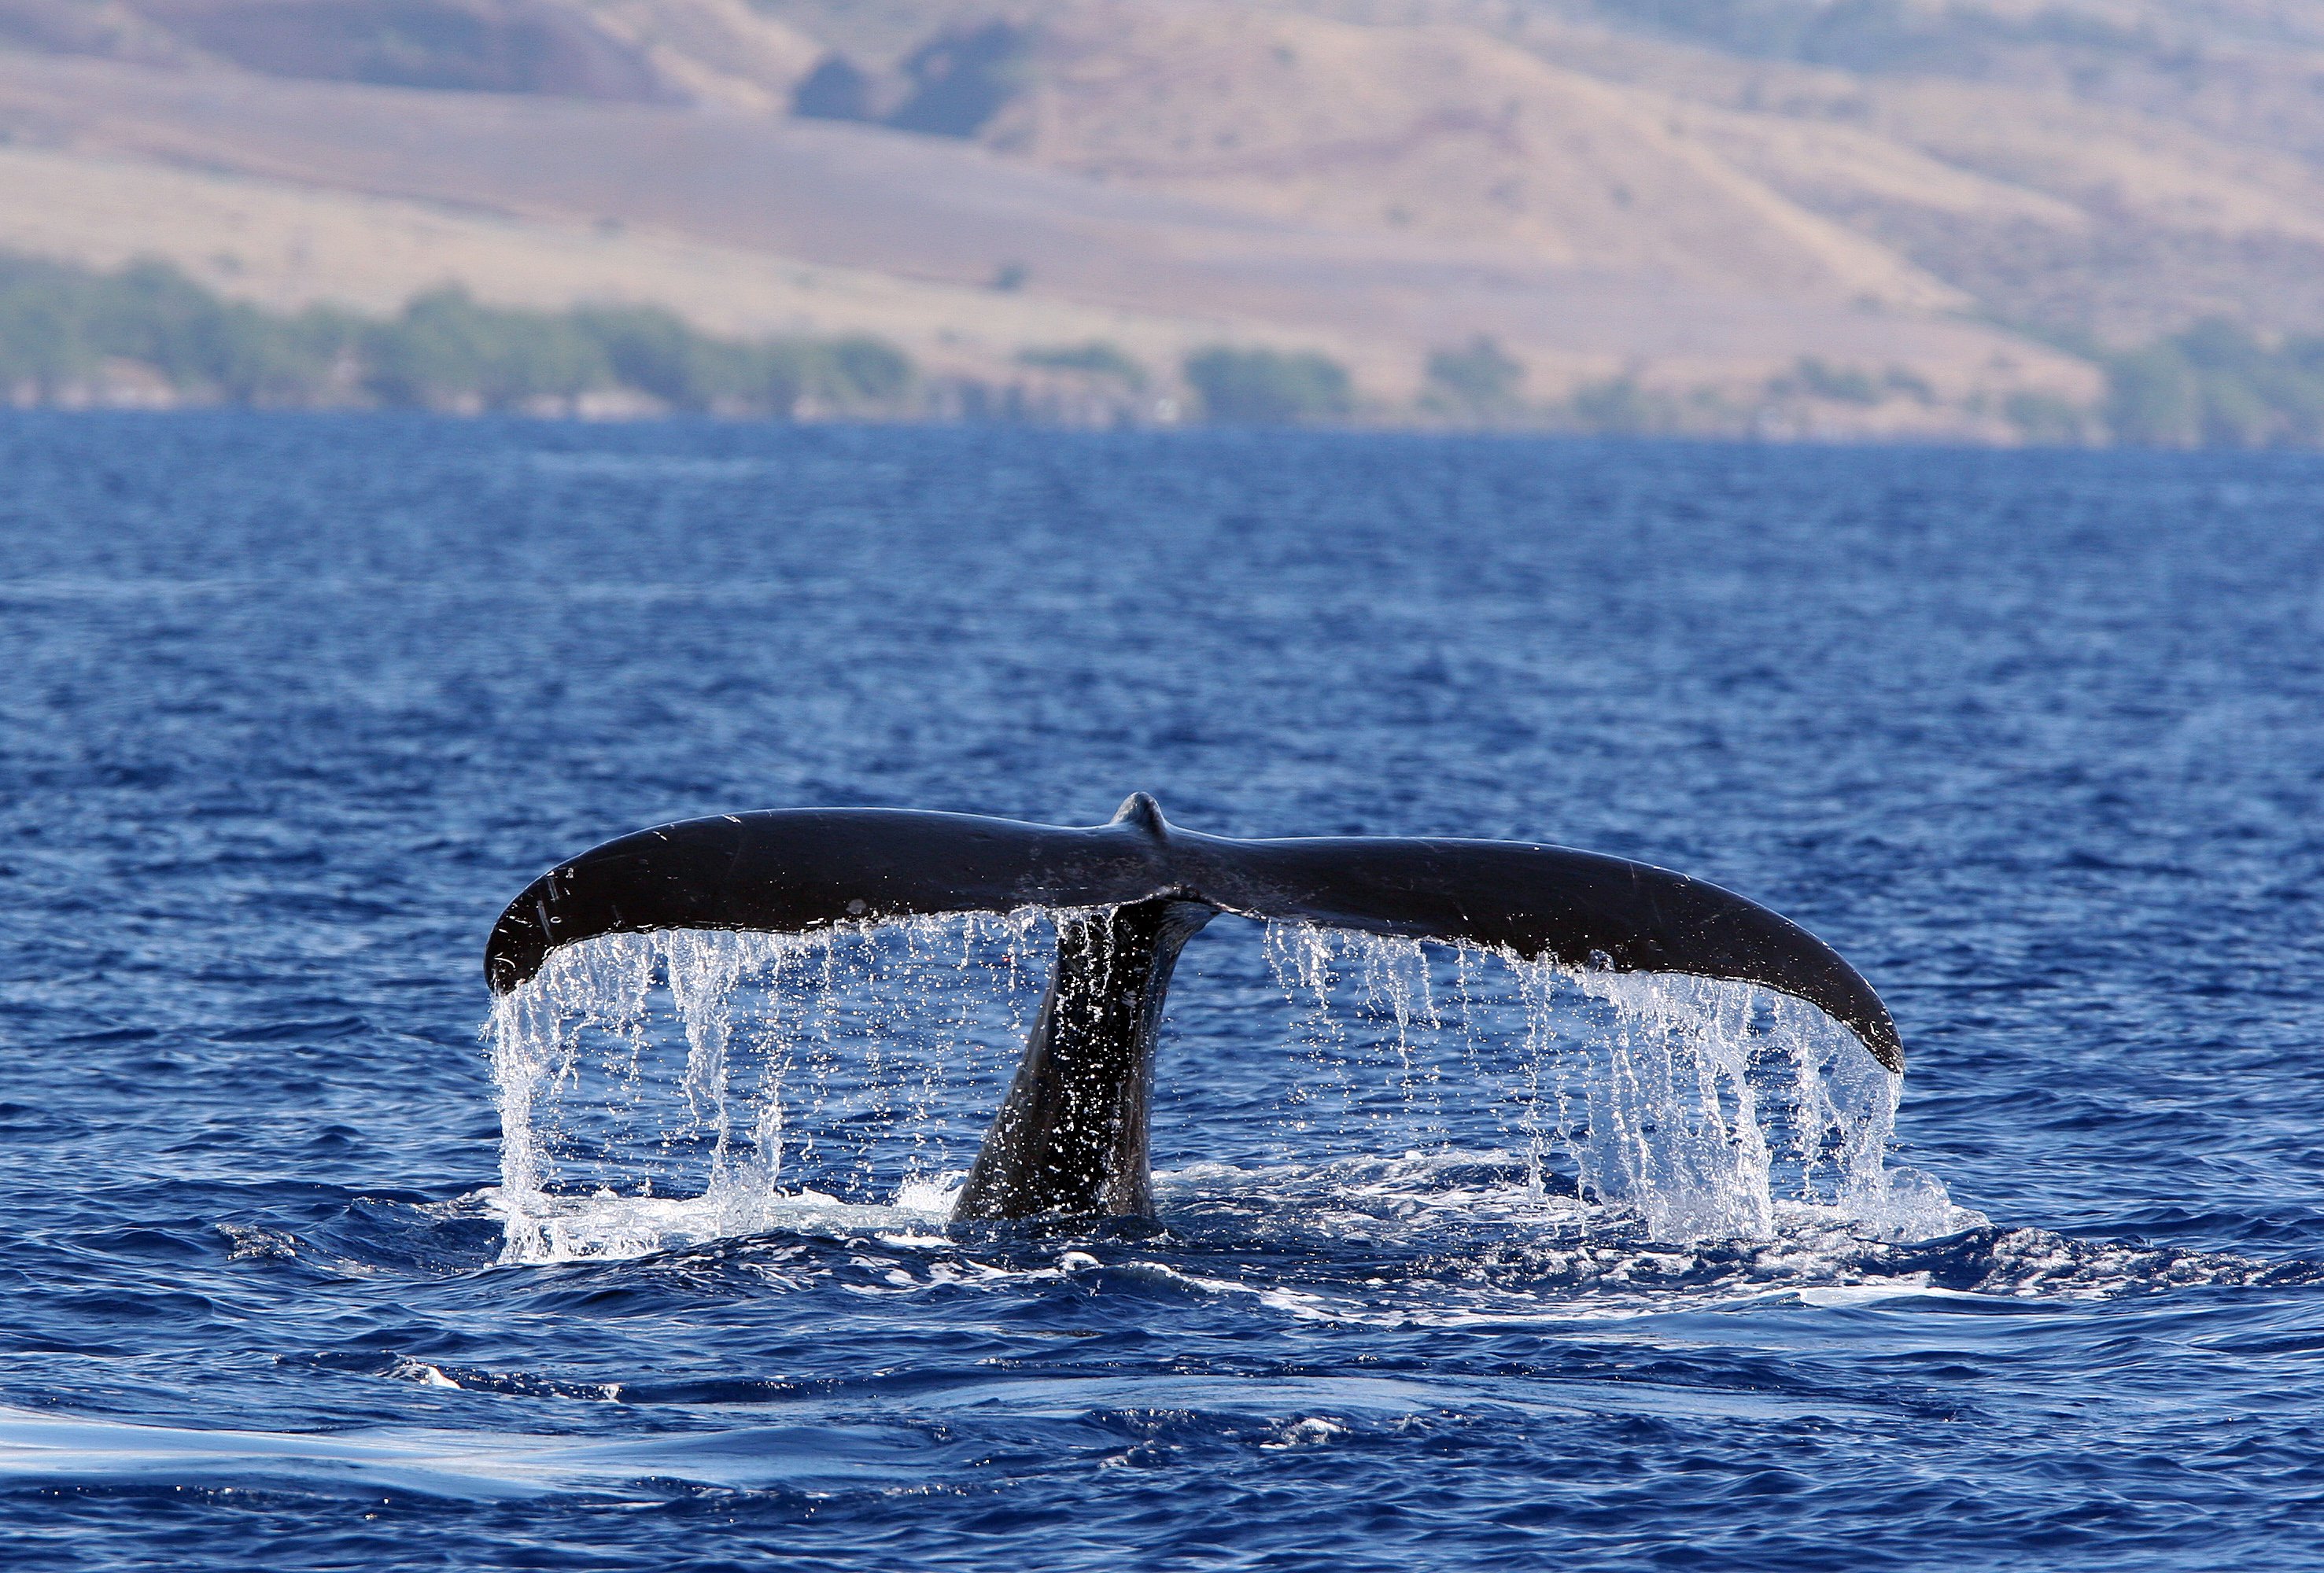 Humpback Whale on Maui